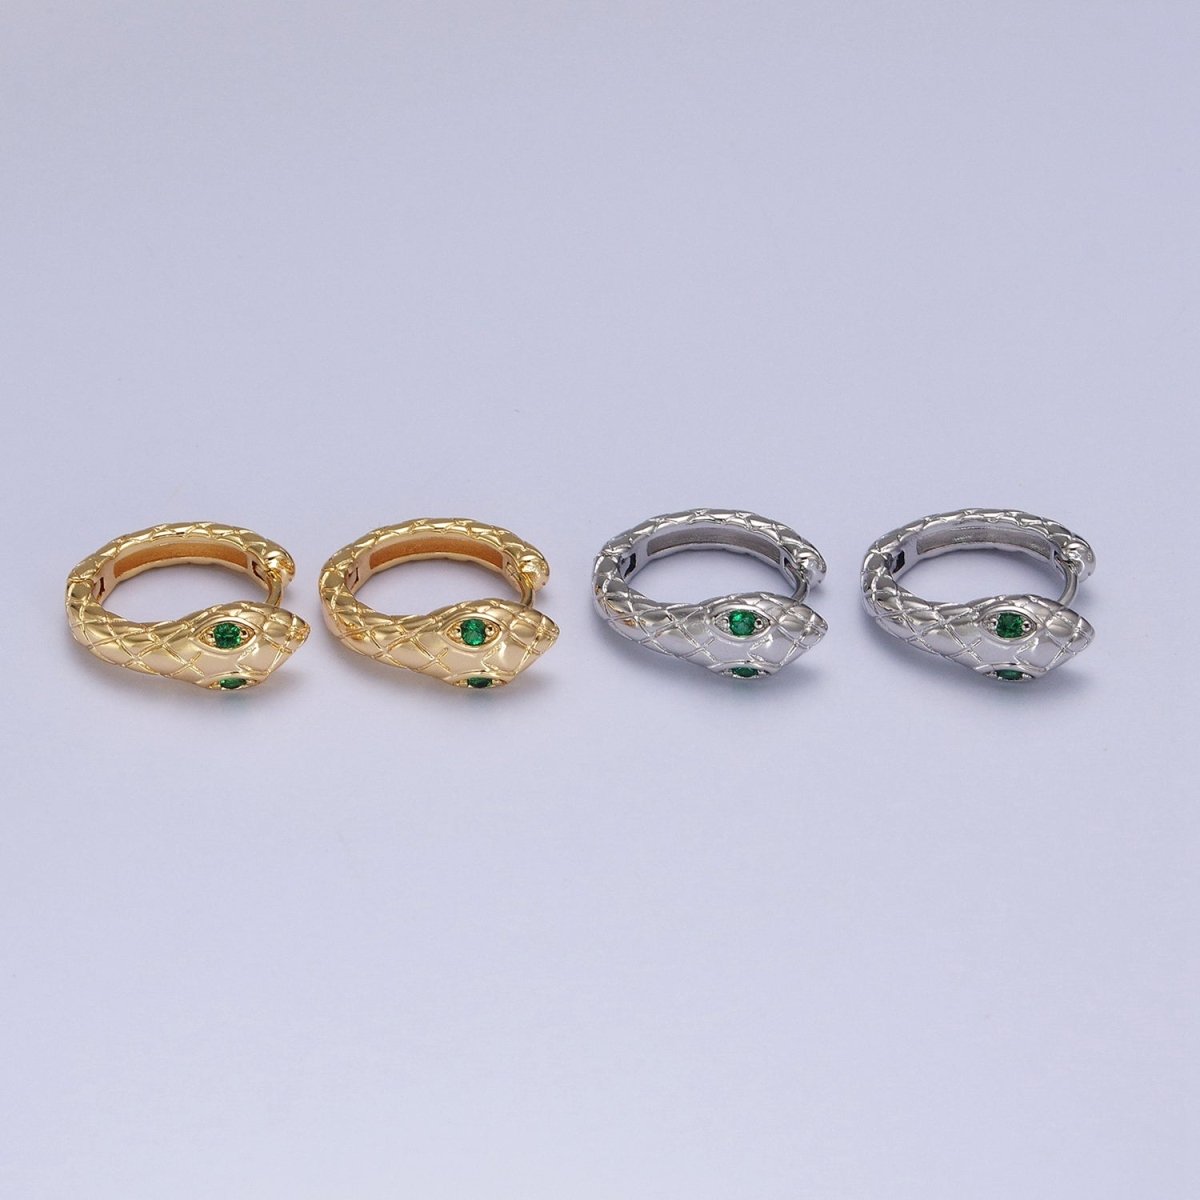 1 pair SNAKE Head Emerald Green Zirconia Eye hoops-Snake CZ Pave Cluster earrings -24K Gold Filled Huggie or Silver Hoop AB055 AB056 - DLUXCA